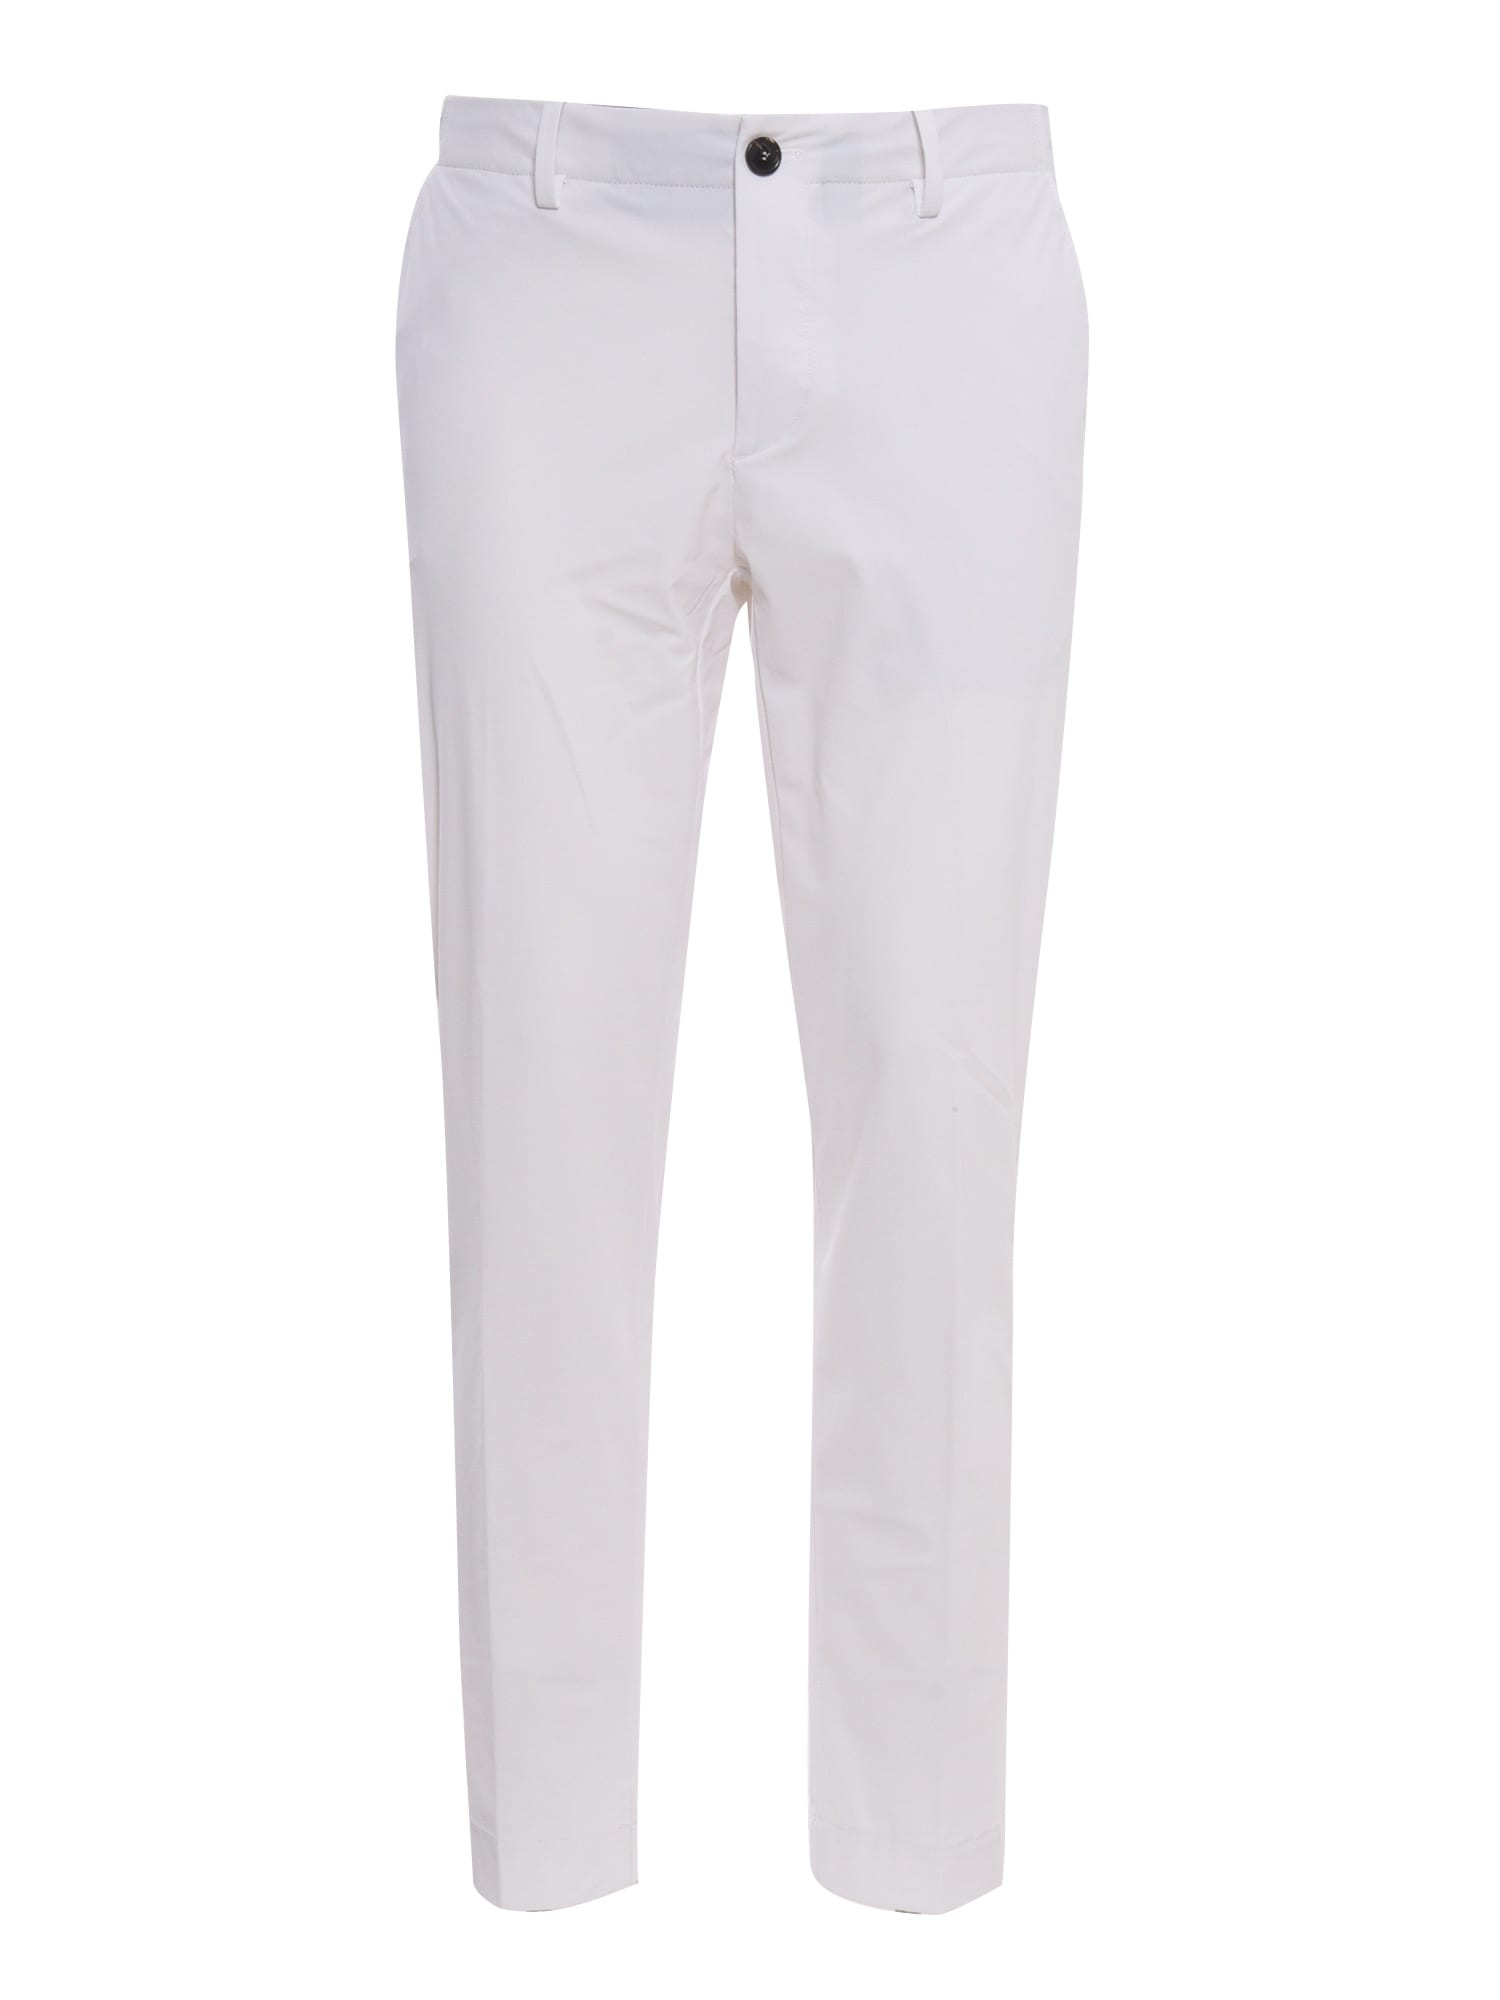 Shop Rrd - Roberto Ricci Design White Chino Trousers